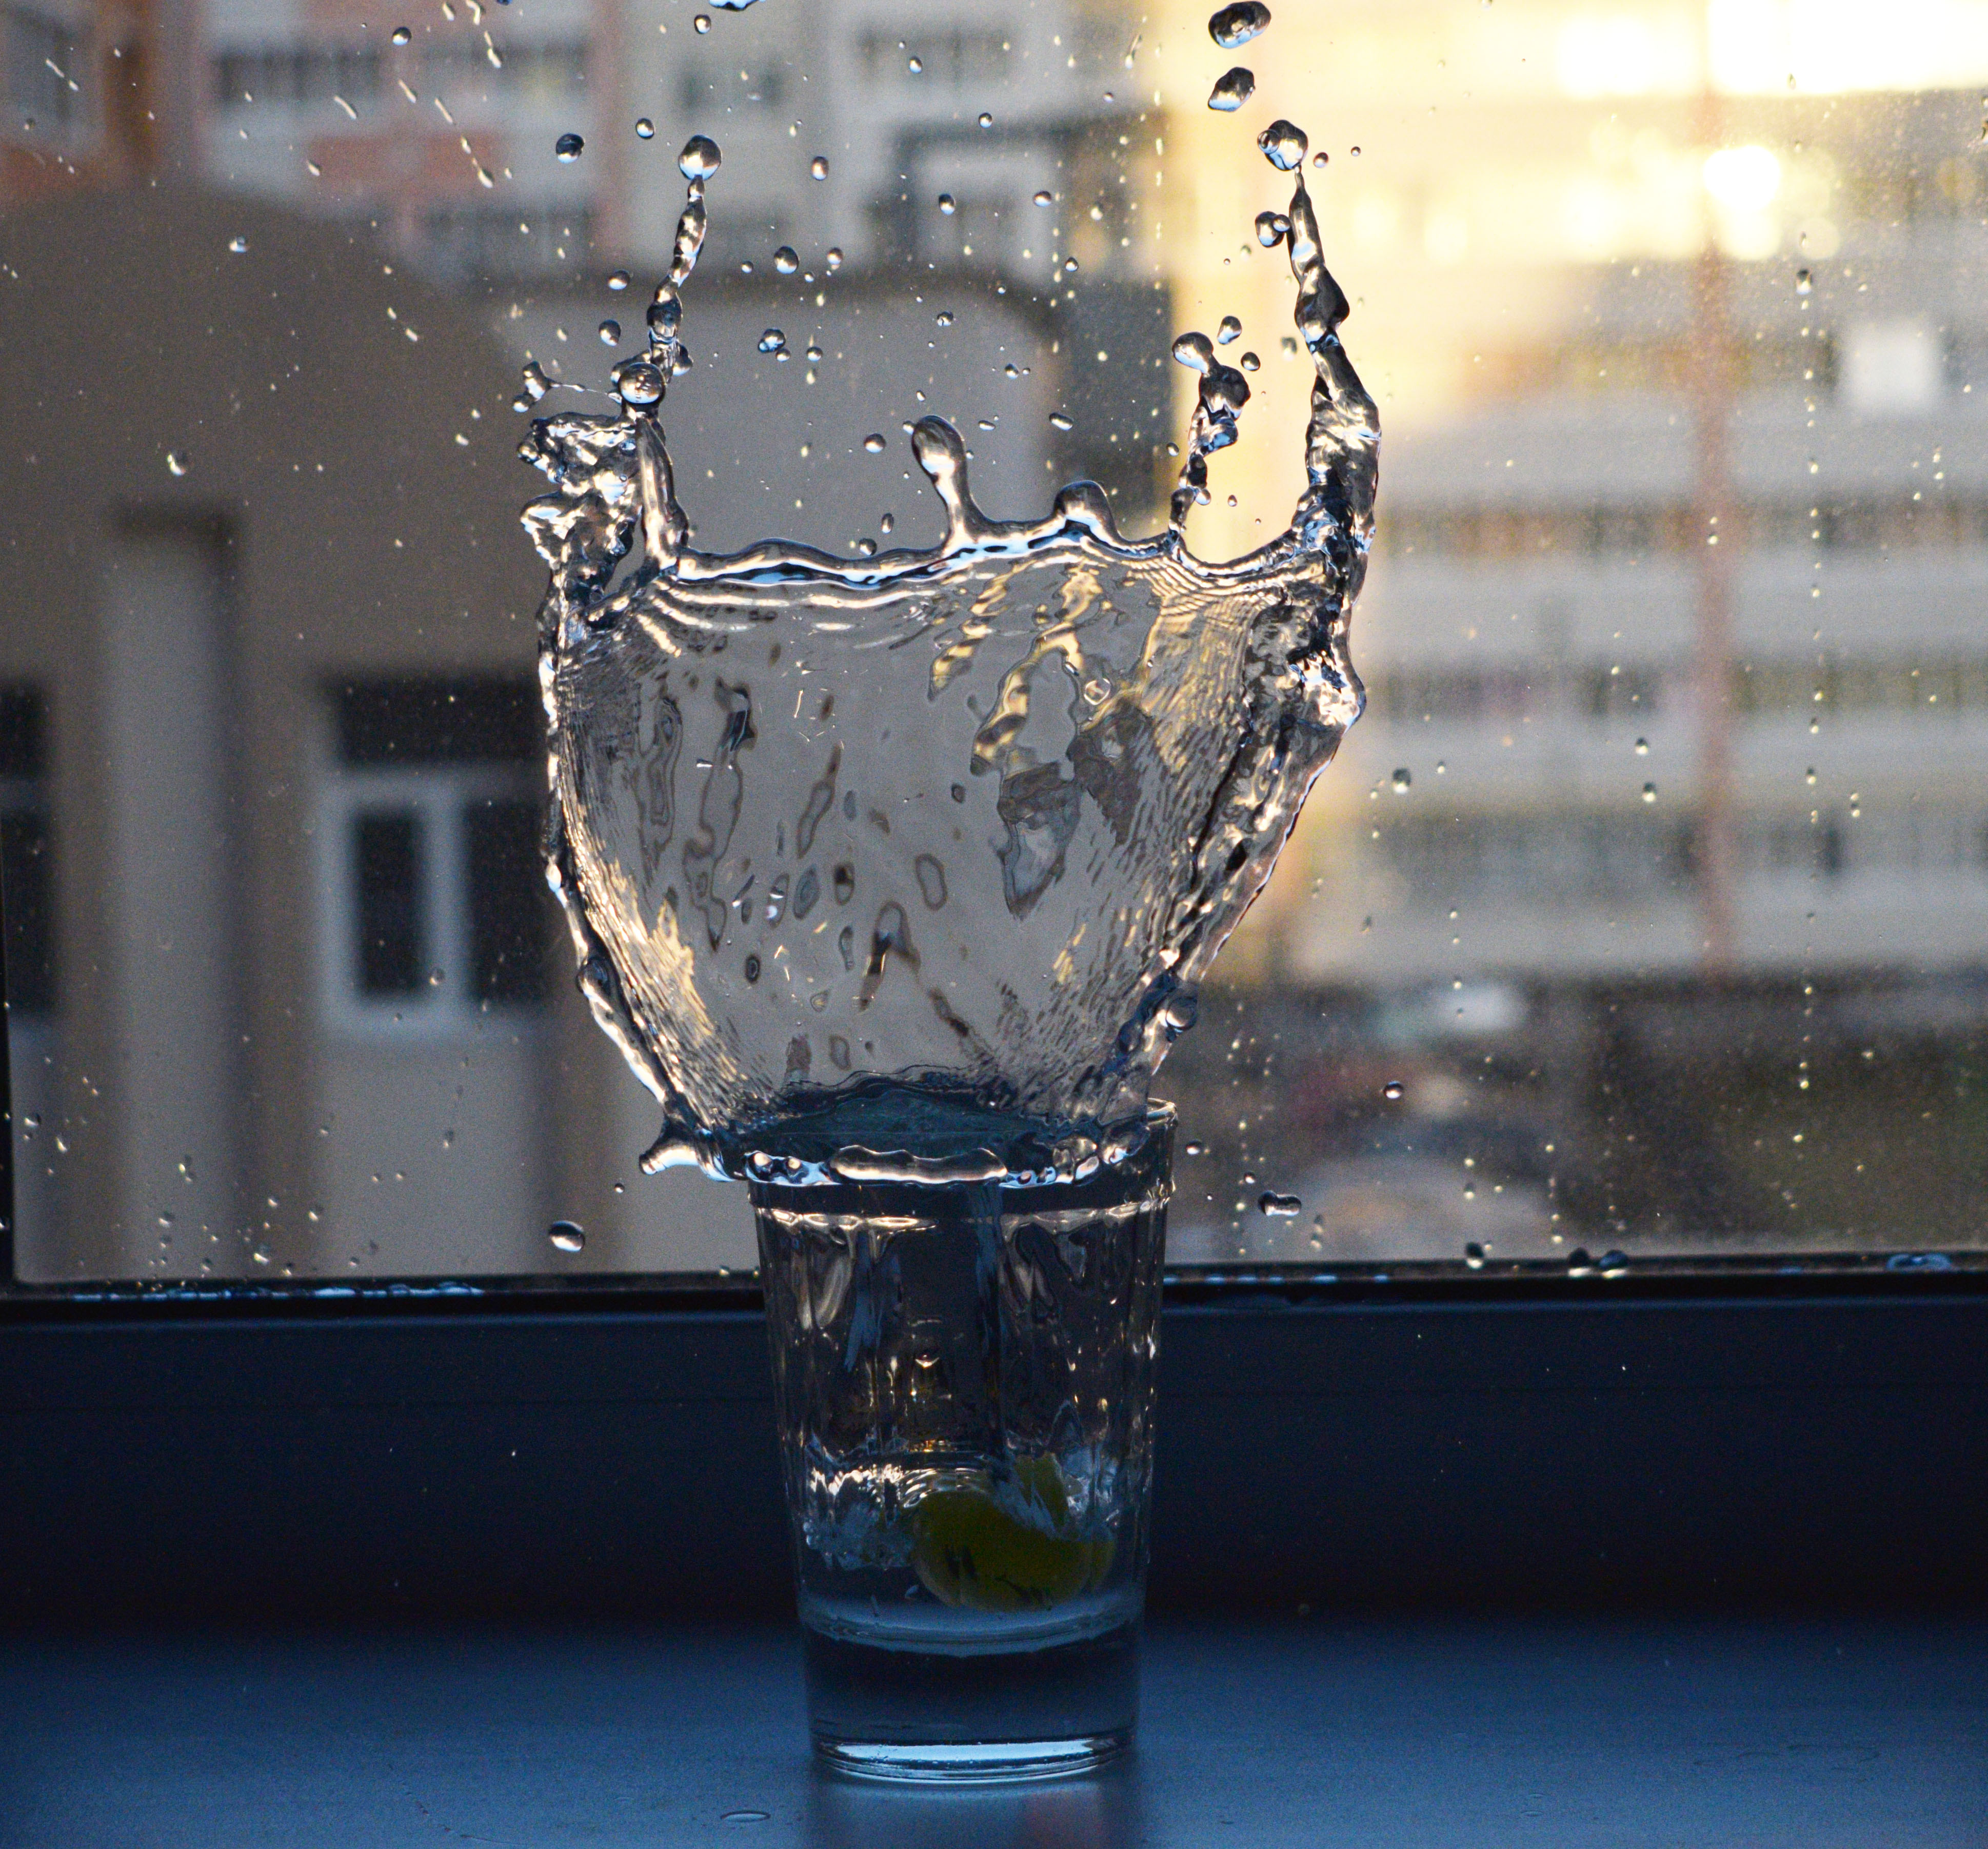 Воду лить стакан. Стакан воды Эстетика. Стакан воды. Стакан воды на окне. Вода в бокале Эстетика.